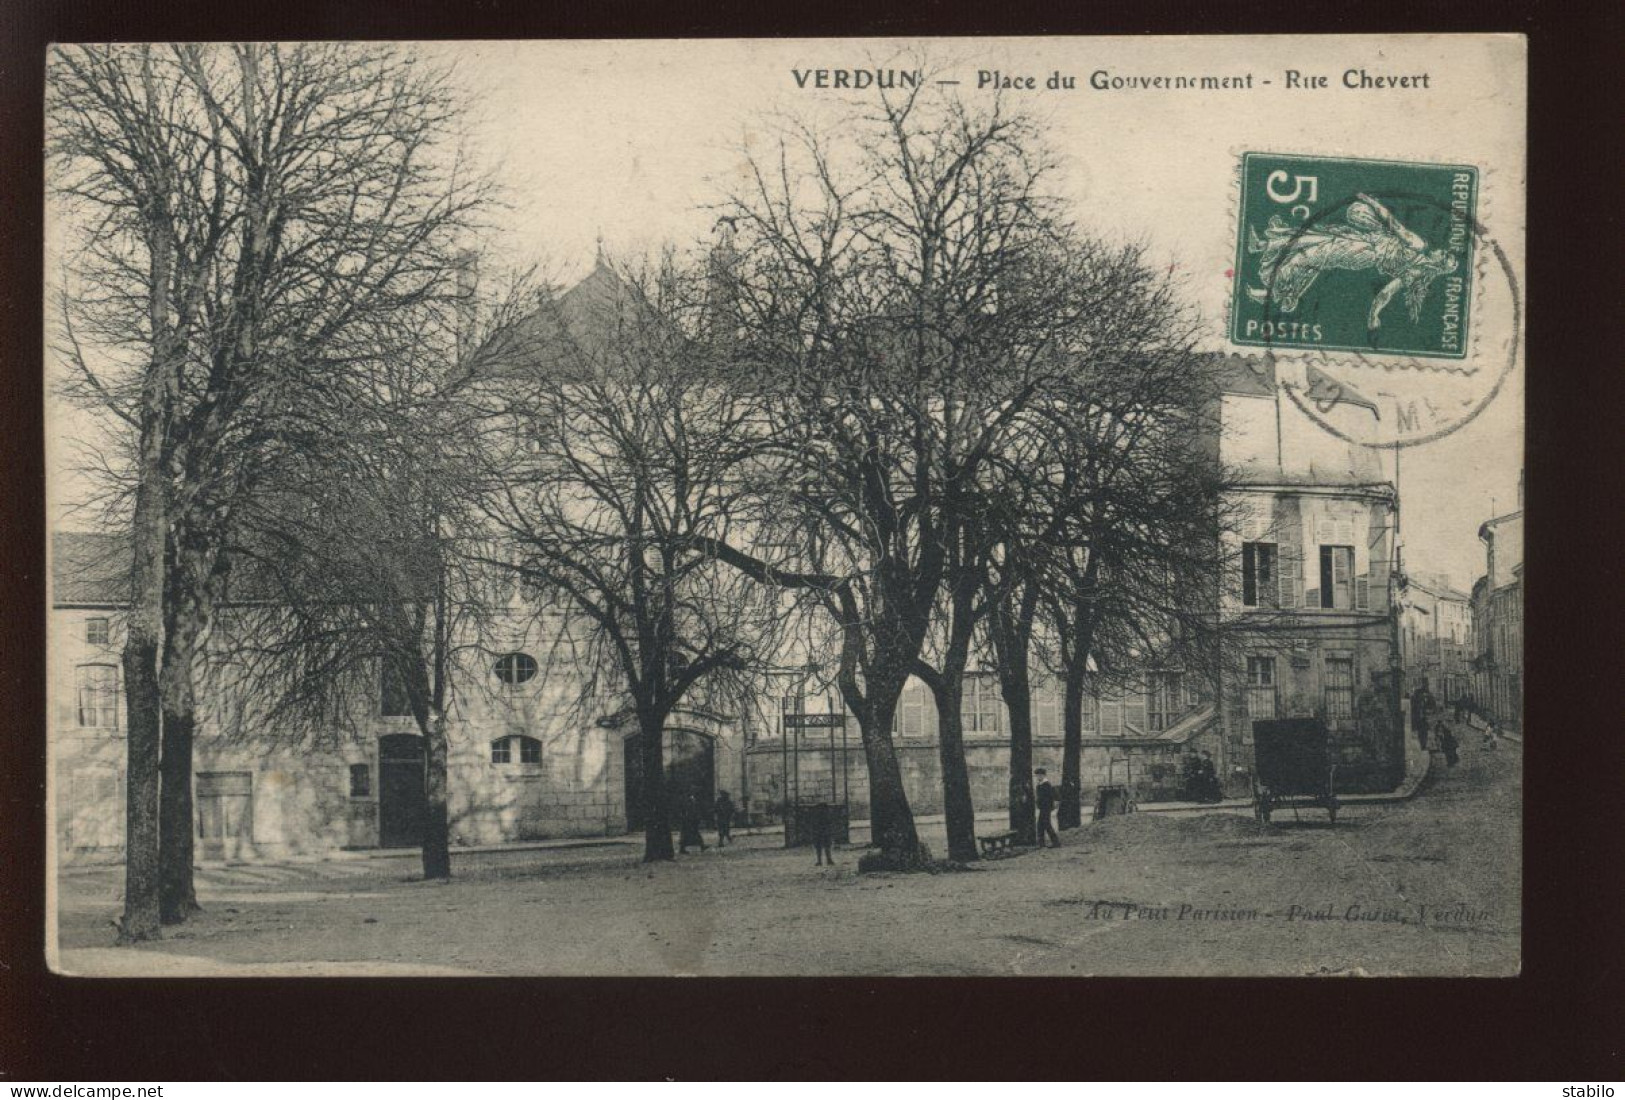 55 - VERDUN - PLACE DU GOUVERNEMENT - RUE CHEVERT - EDITEUR PAUL GAROT - Verdun